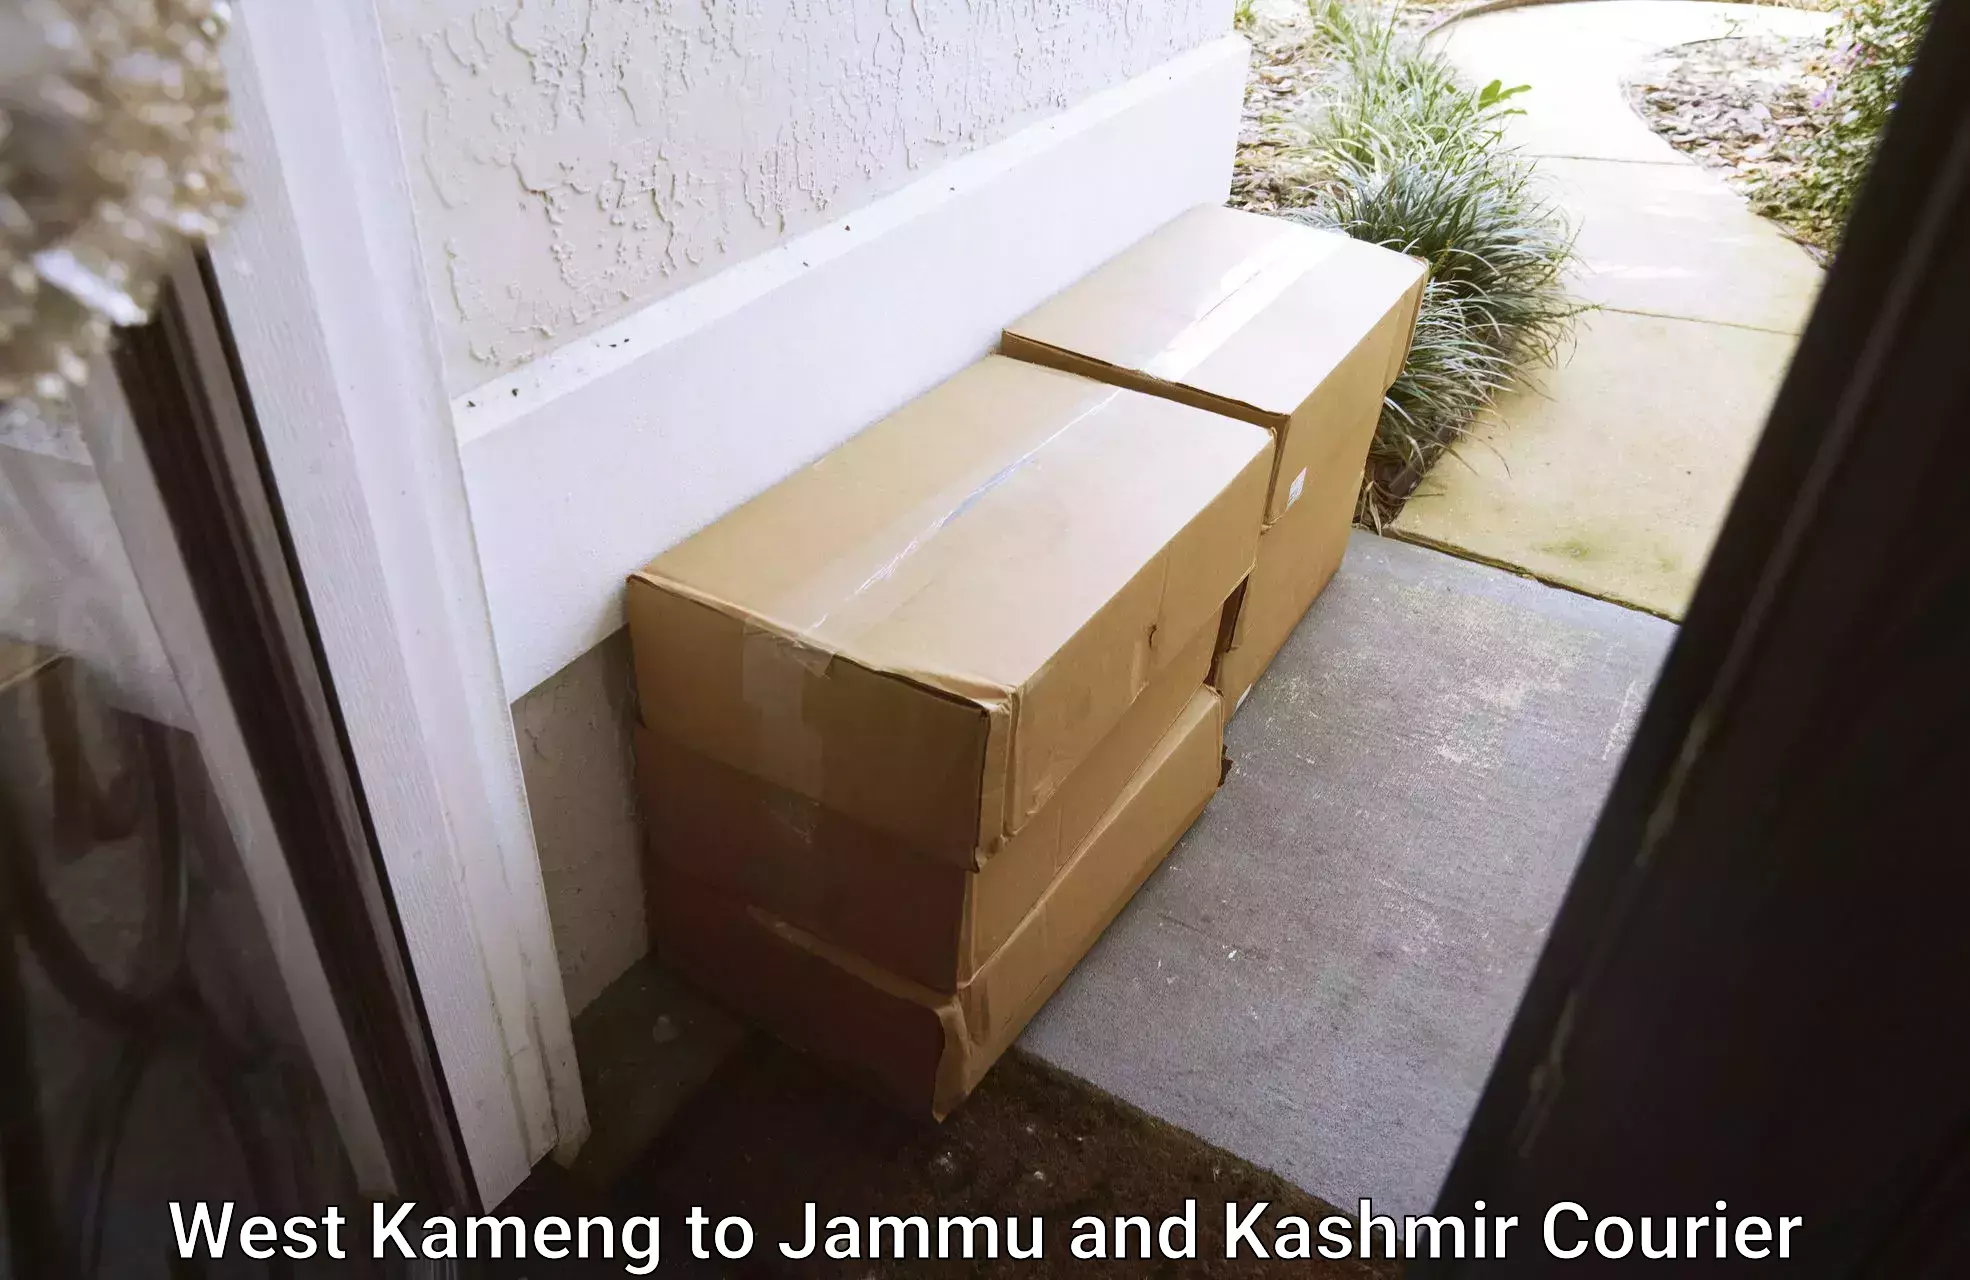 Courier app in West Kameng to Srinagar Kashmir